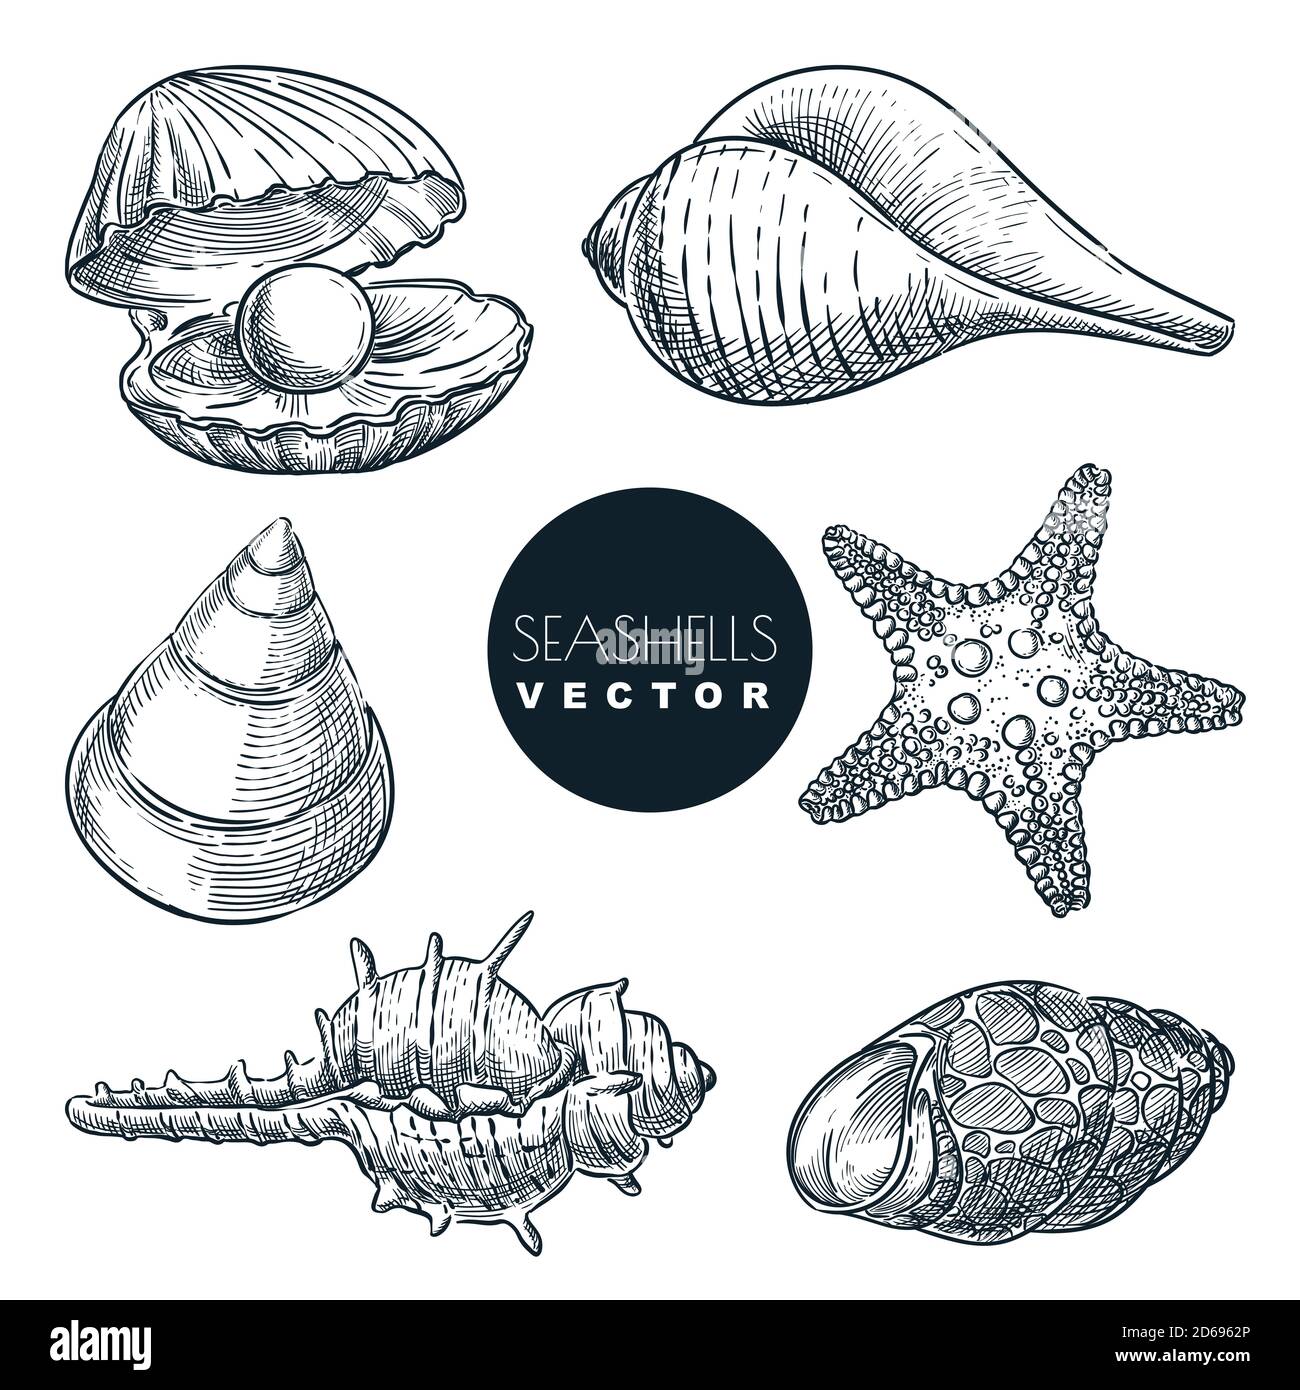 Conchas de Mar decoración de fondo. Conchas de Mar hermosa decoración de  fondo Fotografía de stock - Alamy